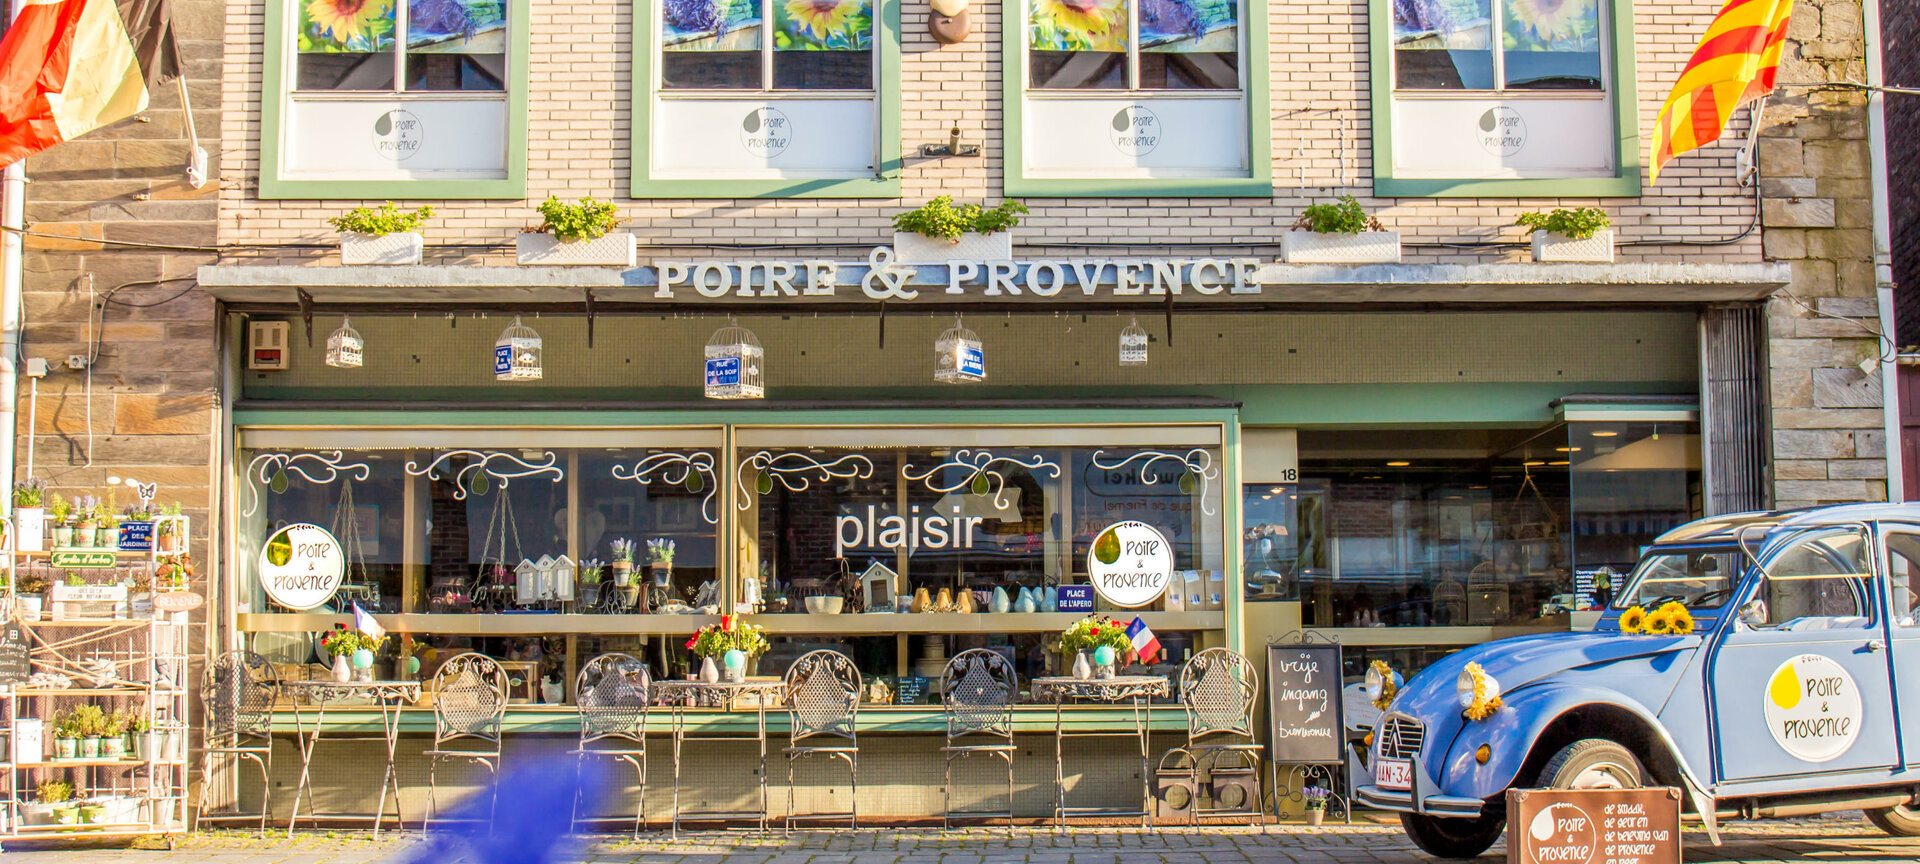 Poire & Provence - De smaak, de geur en de beleving van de Provence in Peer